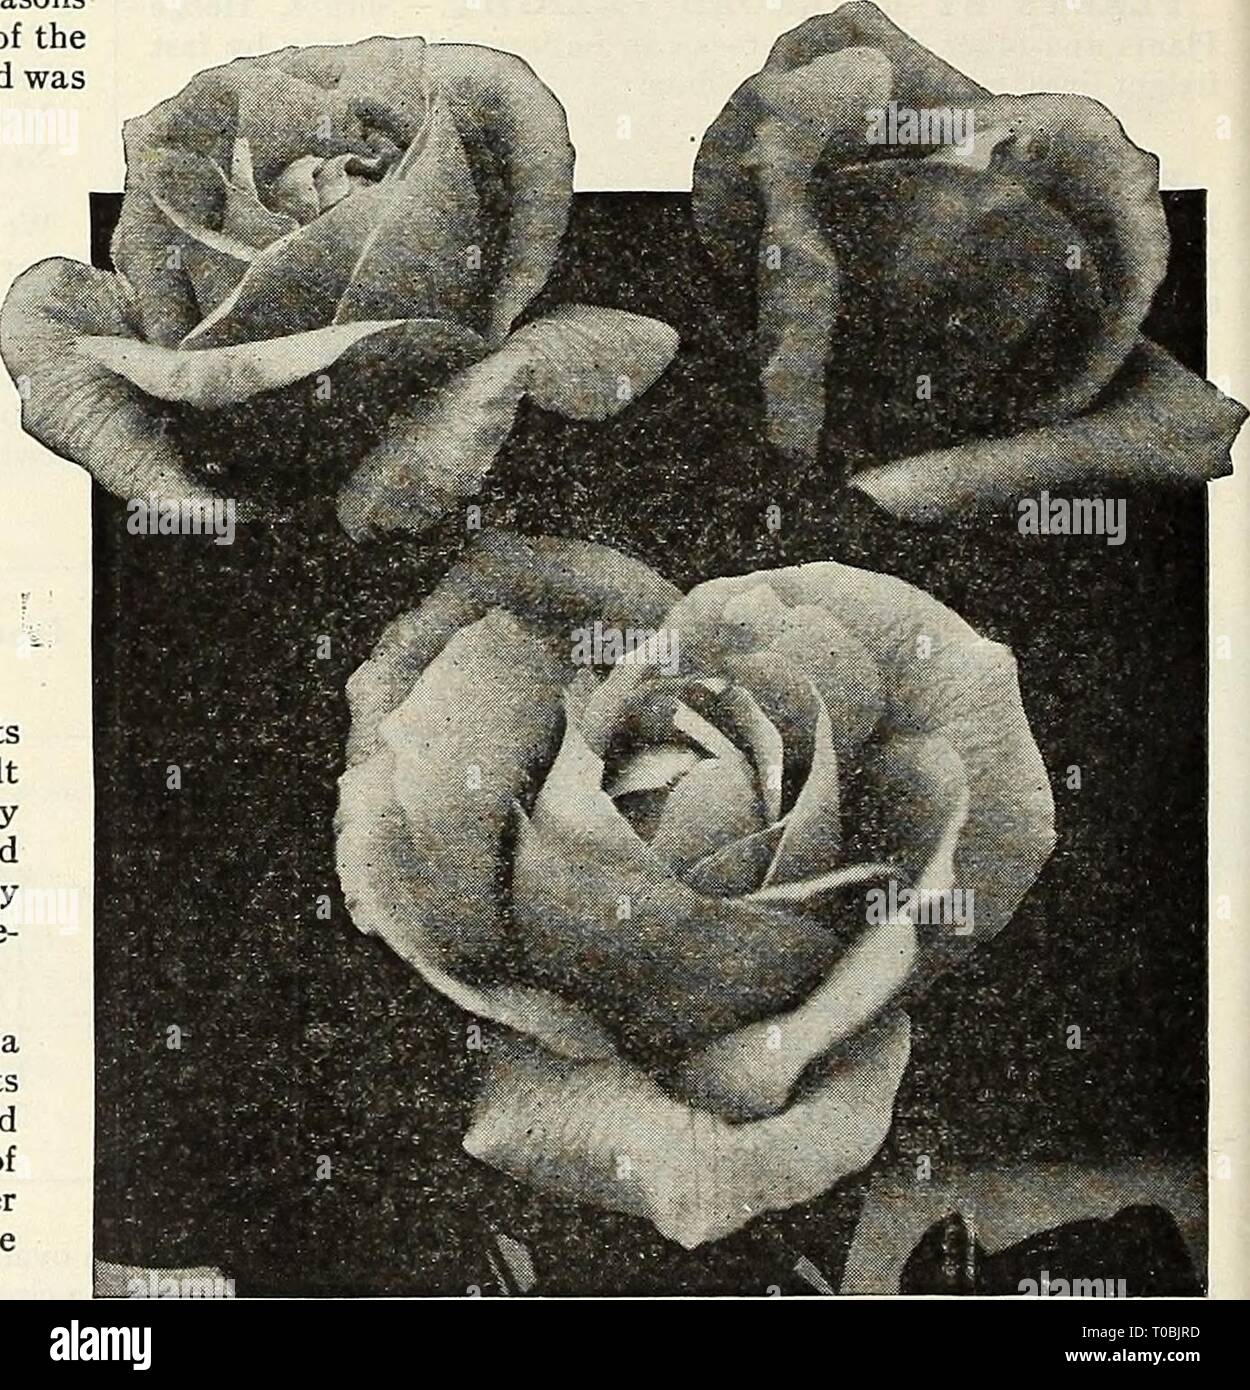 Dreer's Garten Buch 1927 (1927) Dreer's Garten Buch 1927 dreersgardenbook 1927 henr Jahr: 1927 DREER IST speziell präparierten Rosen für den Garten, während unsere alte Kunden mit dem hohen Grad an Rosen, die wir vertraut sind, möchten wir die Aufmerksamkeit derjenigen, die nie unsere gepflanzt haben, um zu verweisen, auf die Art und Weise, in der diese Pflanzen vorbereitet sind. Alle unsere Rosen sind gewachsen, und im Herbst werden sorgfältig - gegraben, in Töpfe gepflanzt und im kalten Gewächshaus oder kalten Frames, wo künstliche Wärme verwendet wird nur auf den Ausschluss der meisten strengen Frost gespeichert. Unter dieser Behandlung die Pflanzen entwickeln in einer natürlichen Stockfoto